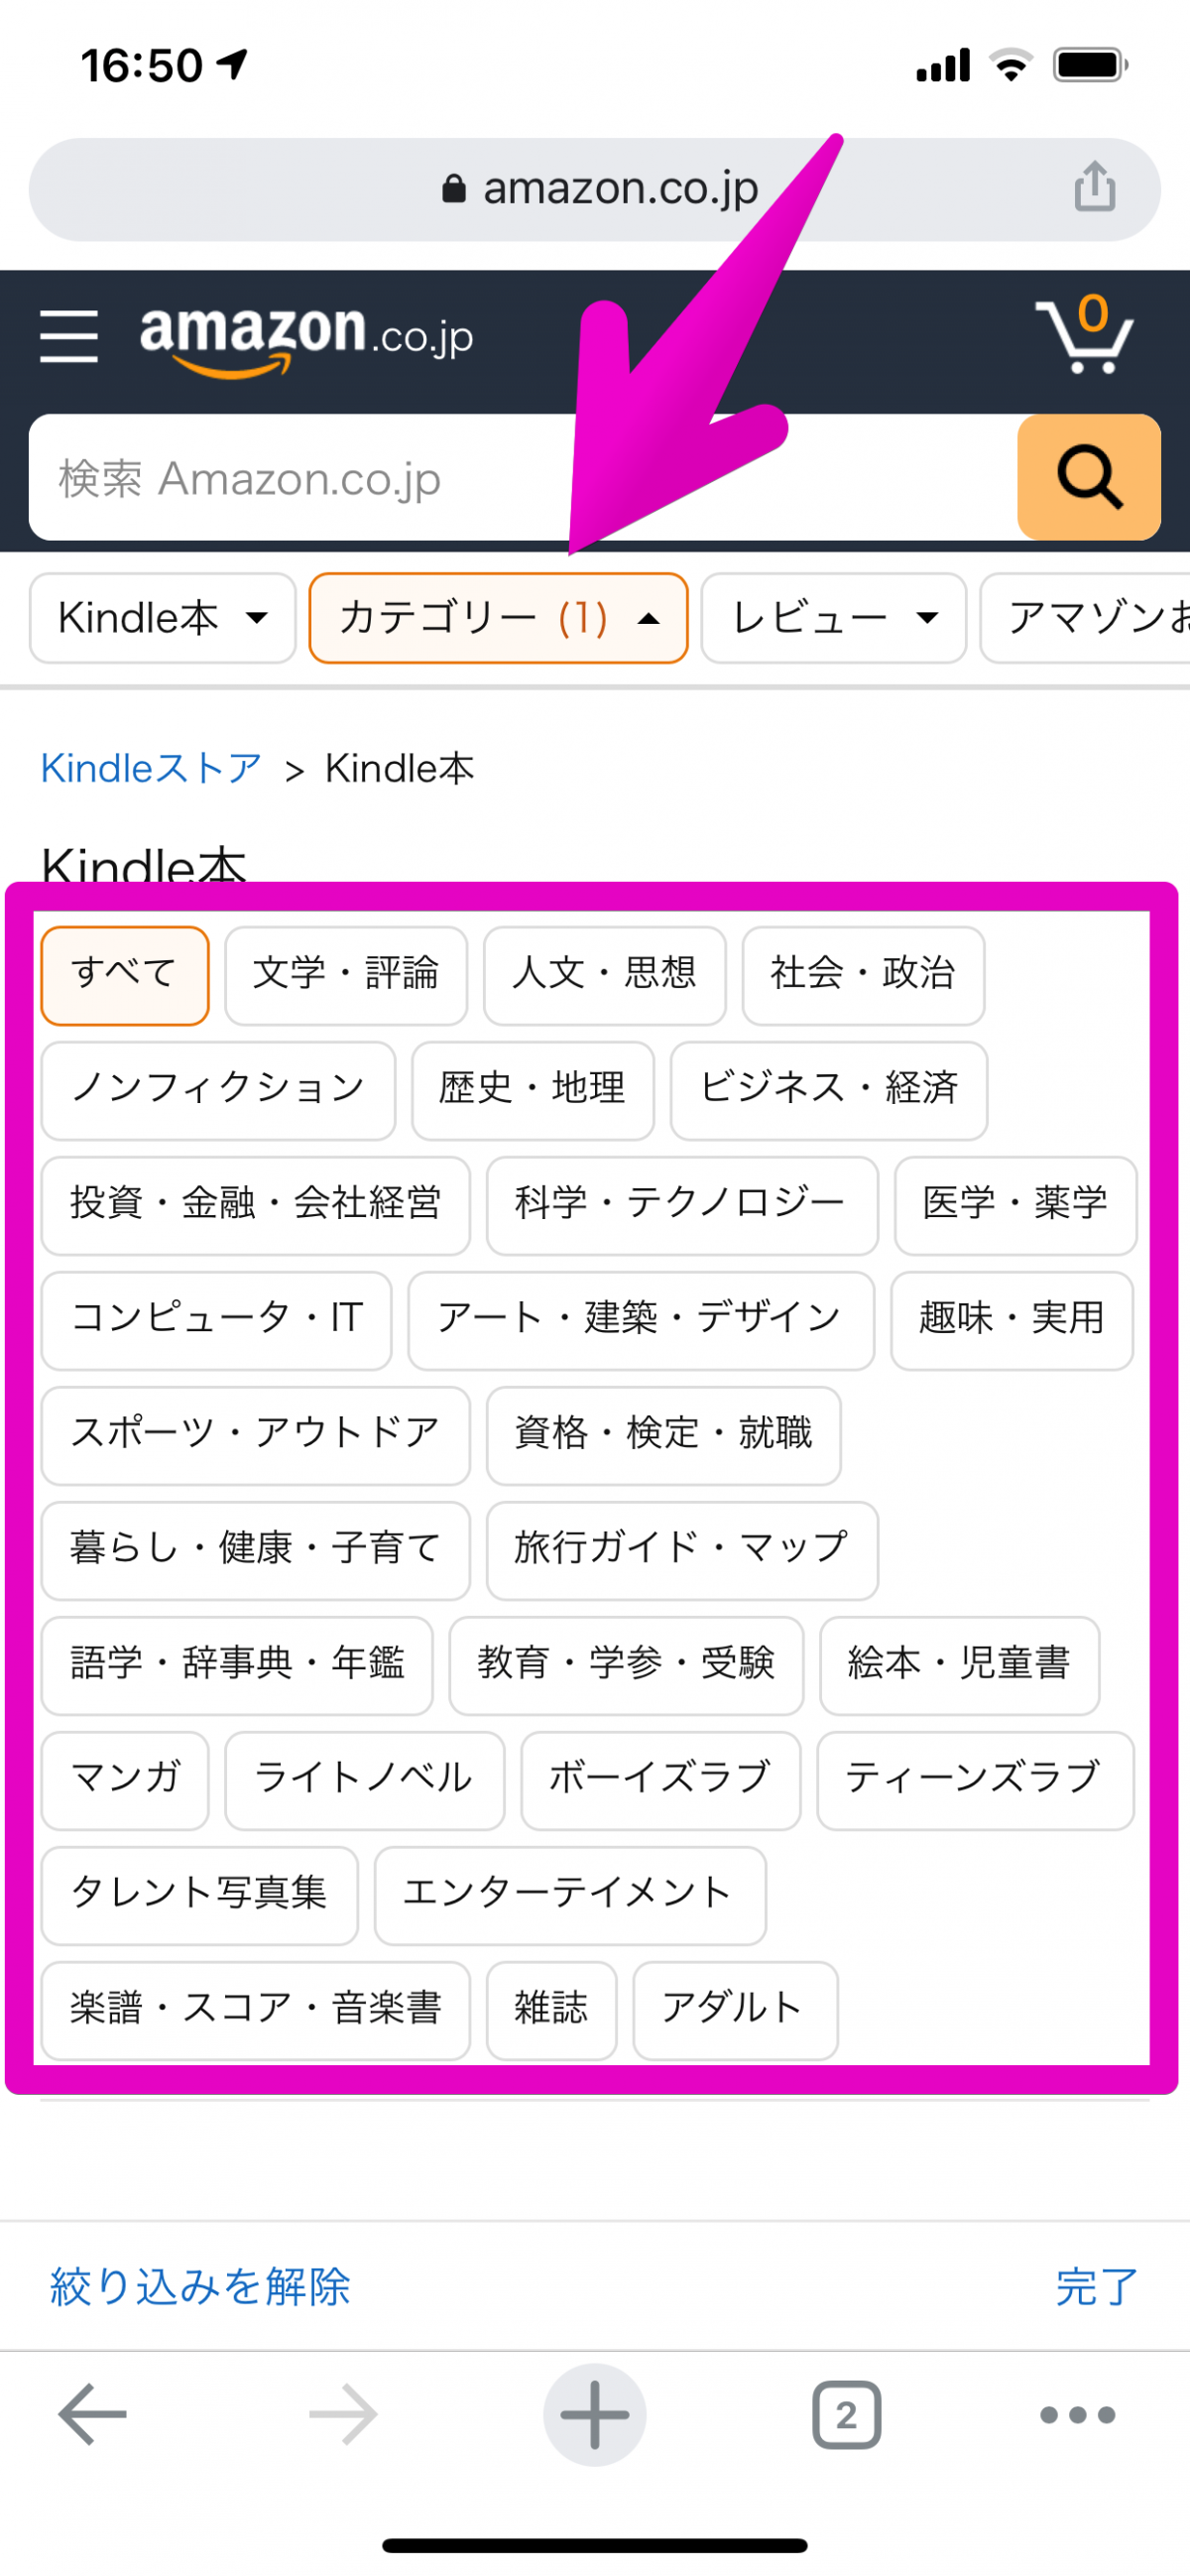 Kindleの無料本を効率的に探す方法 Amazonサイトのまとめページを見るだけ Appliv Topics